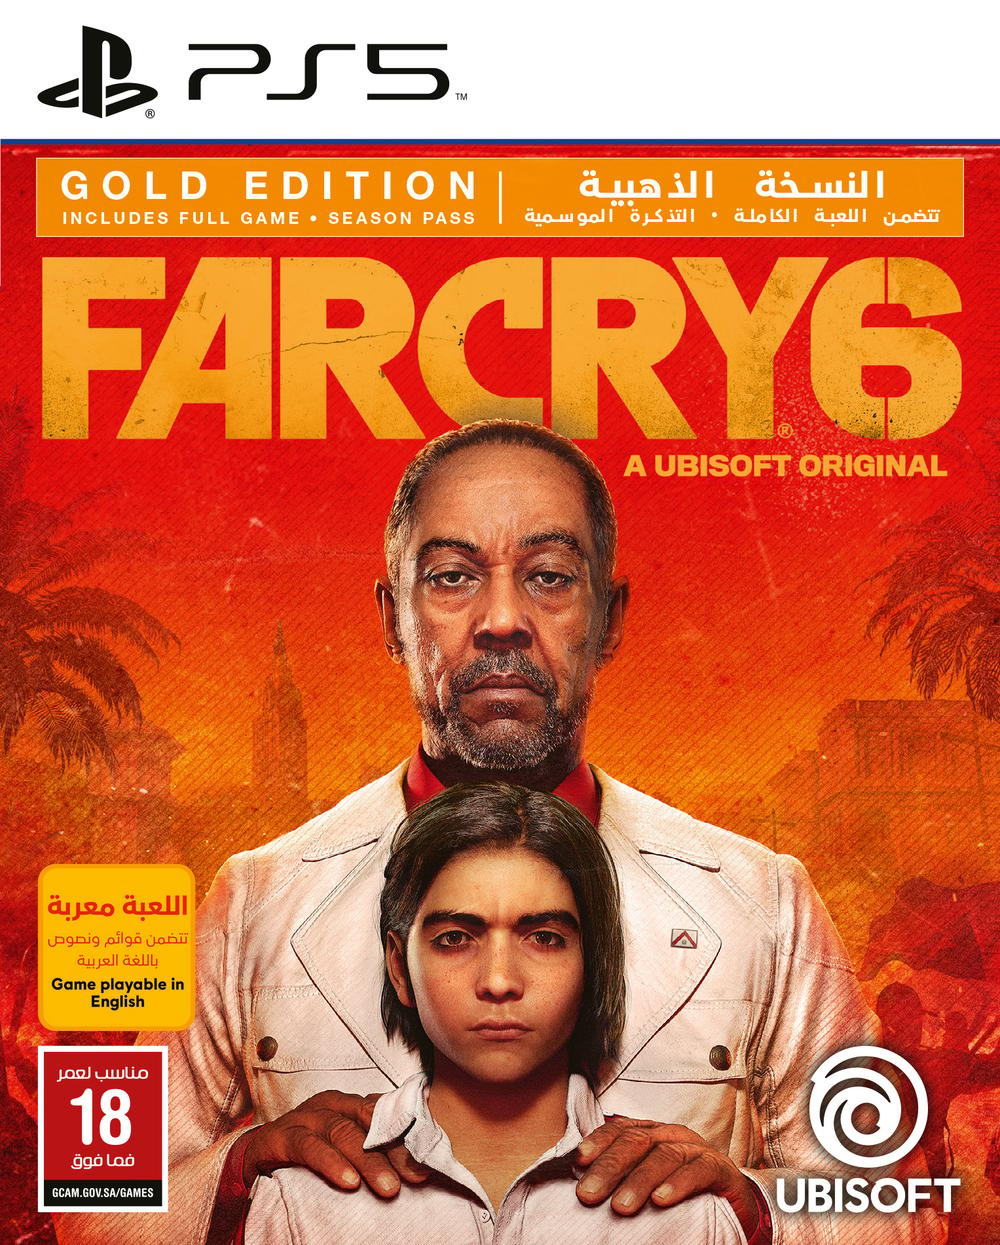 بلايستيشن لعبة  Far cry 6 النسخه الذهبية  PS5 - Modern Electronics